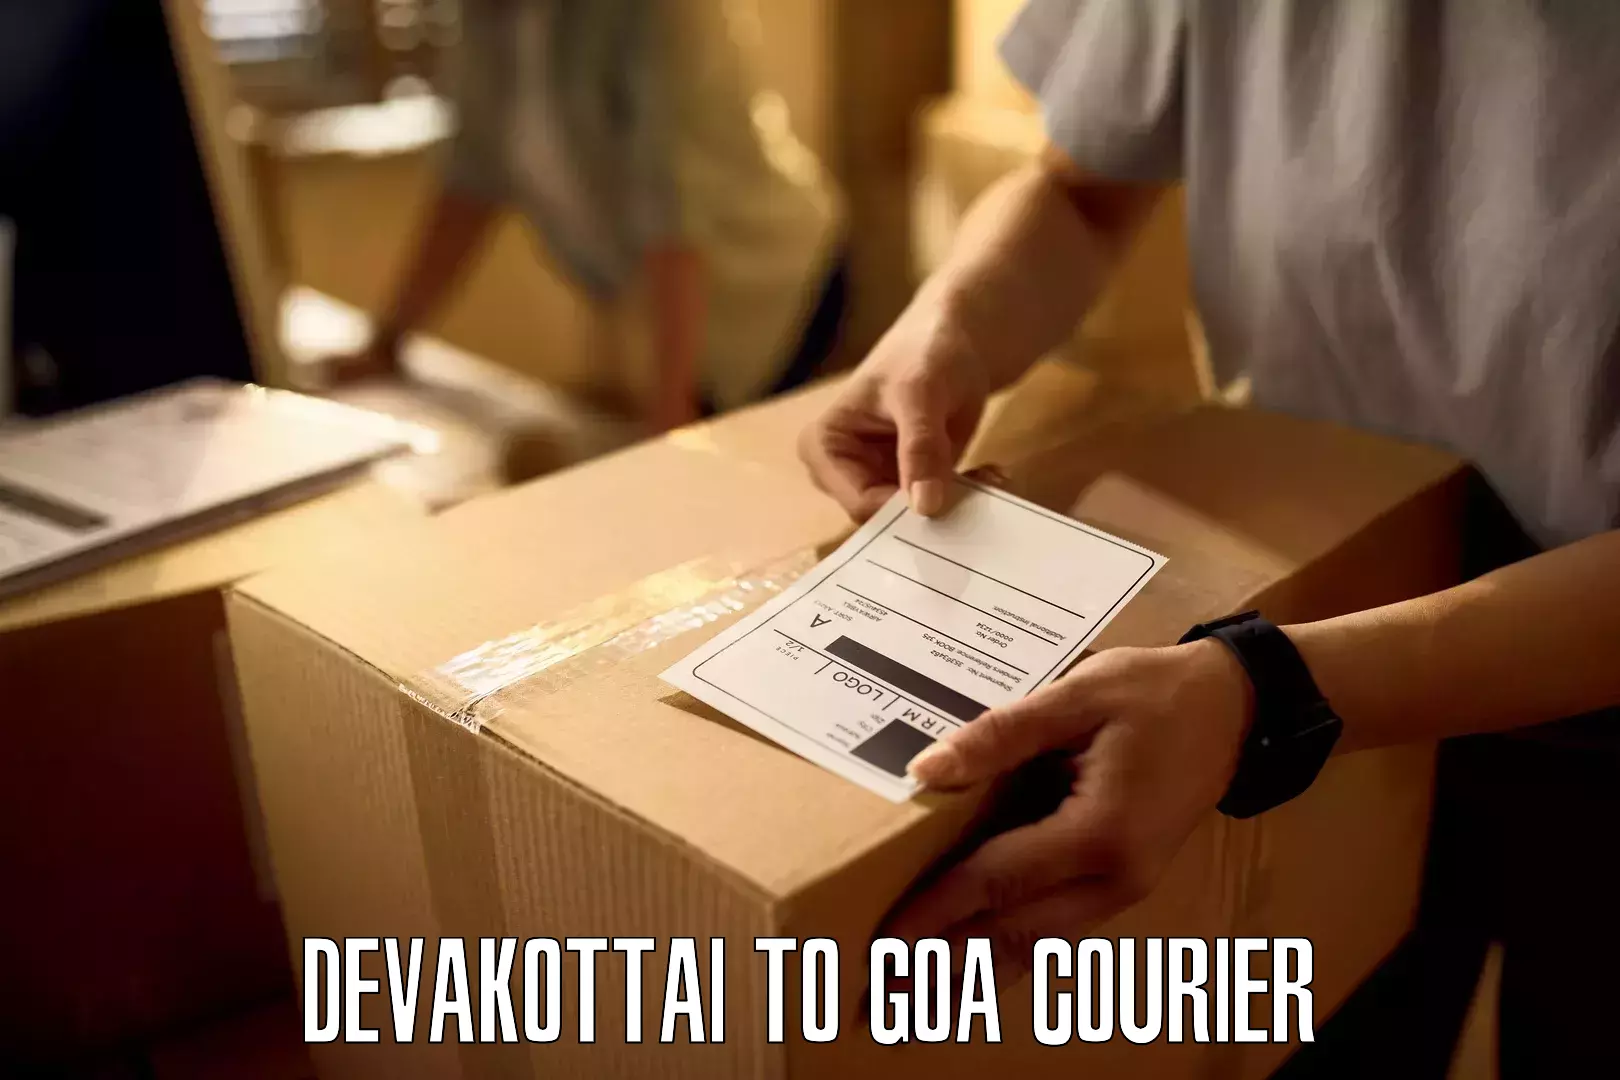 Supply chain delivery Devakottai to Sanvordem